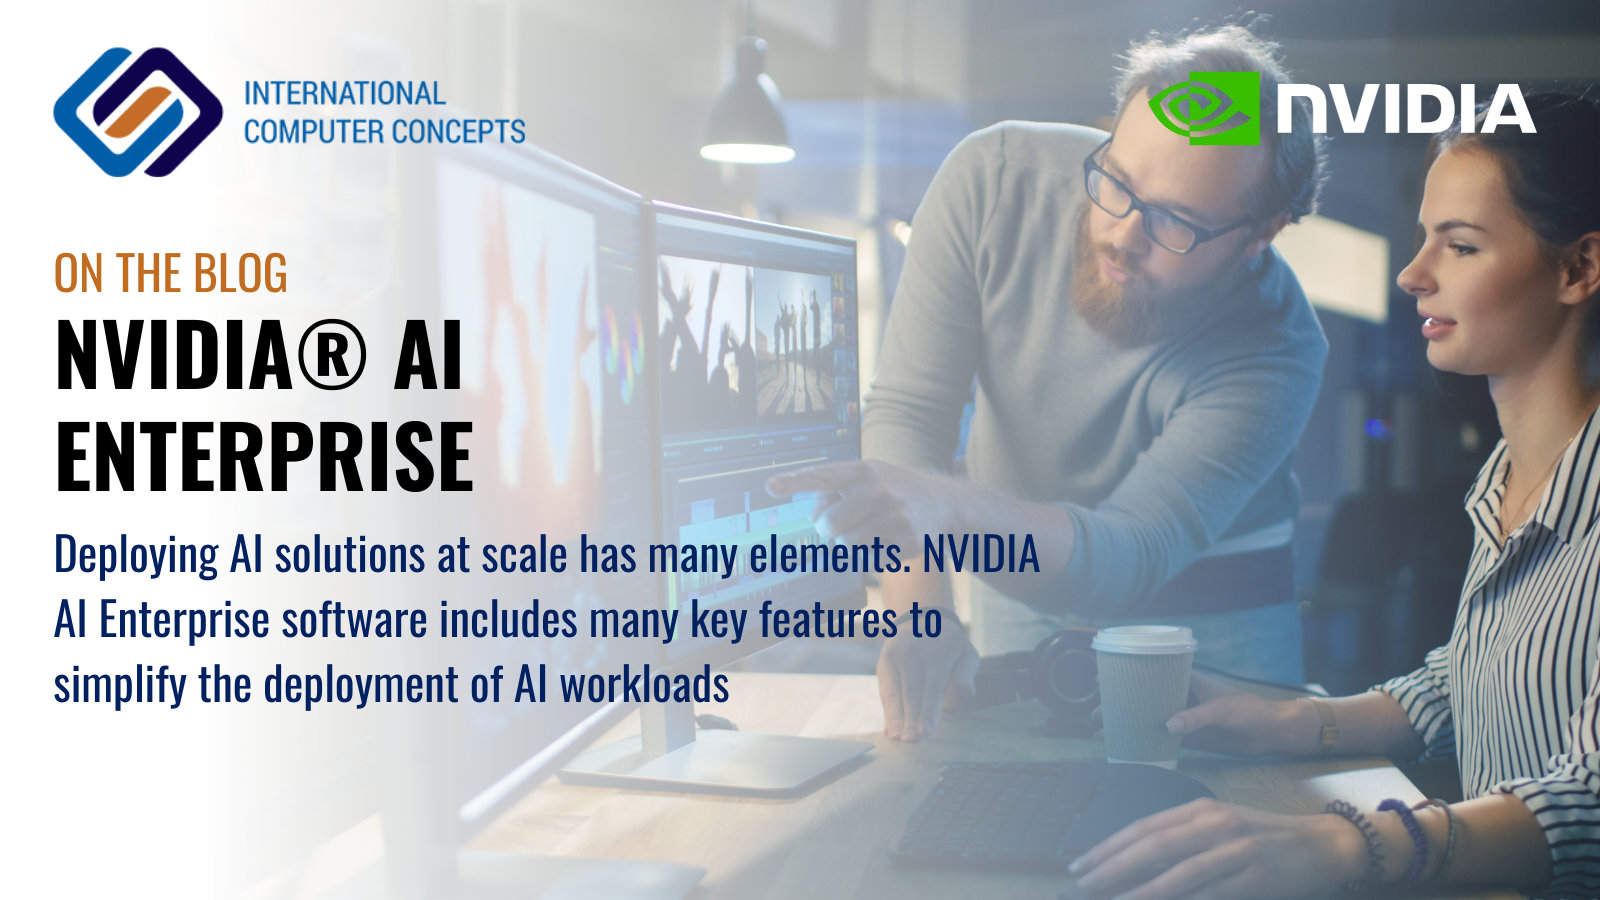 NVIDIA AI Enterprise - Four Key features for AI workloads